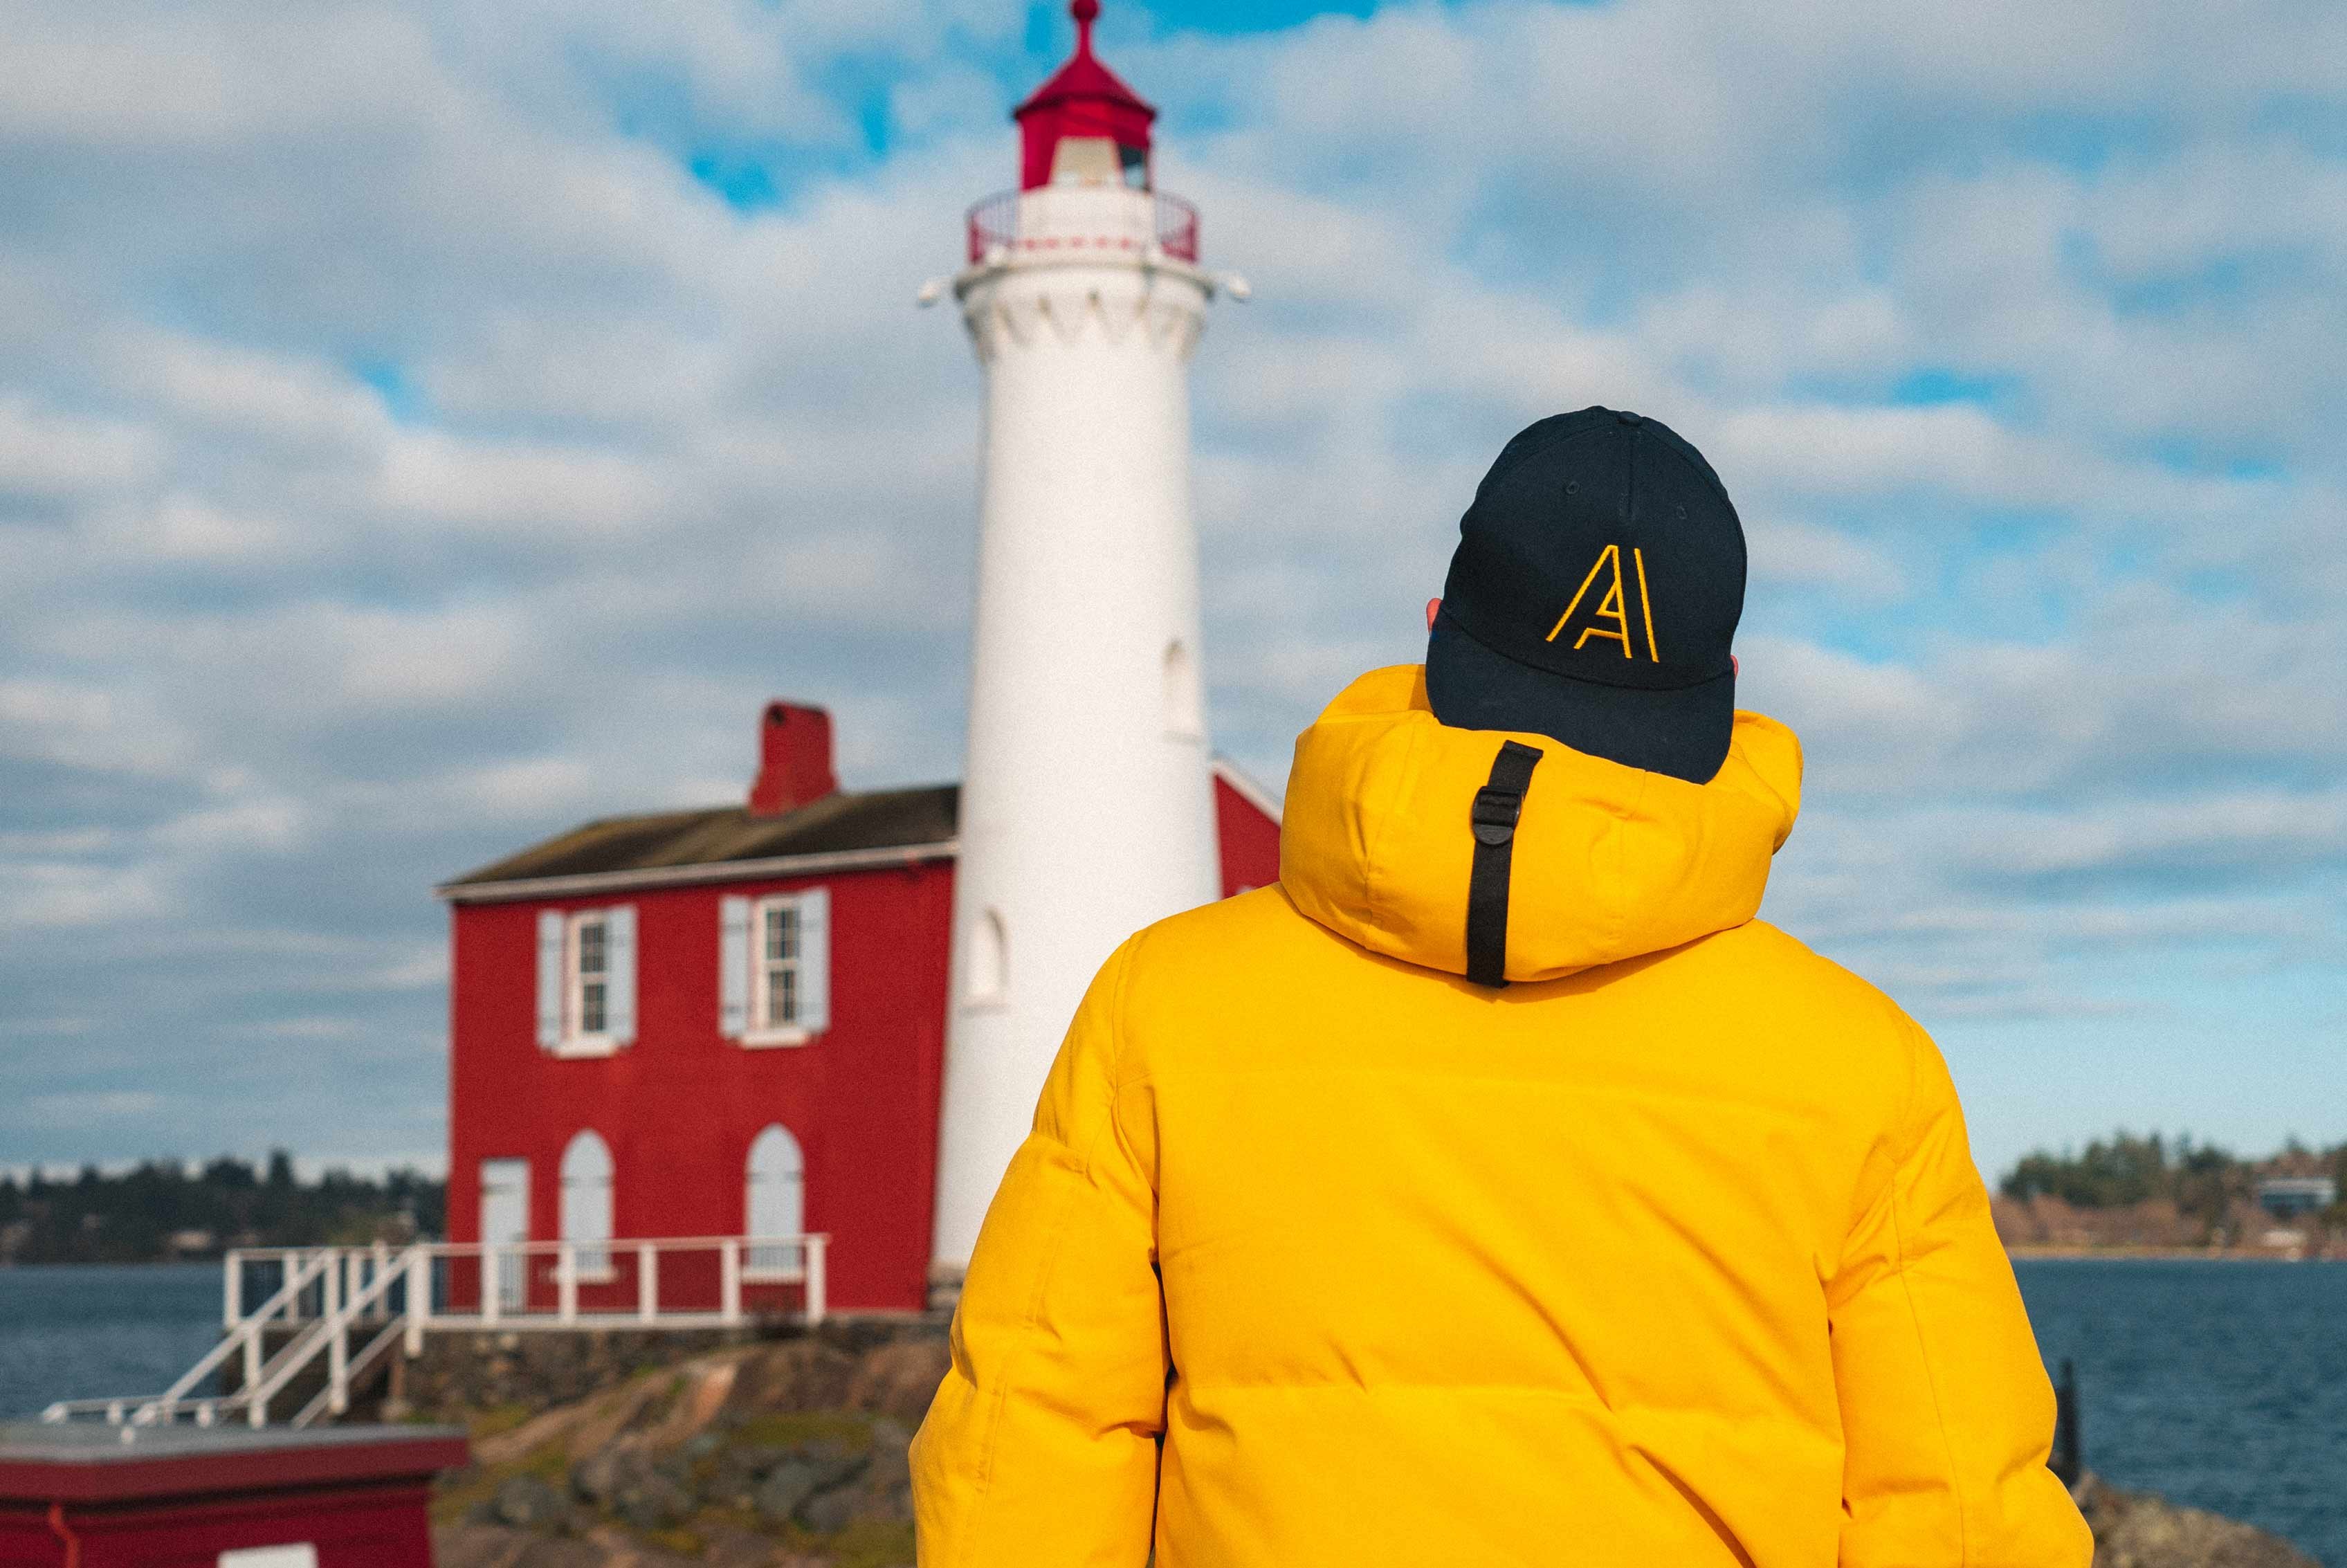 Erlebe mit AIFS Work and Travel in Kanada die atemberaubende Bucht mit einem imposanten Leuchtturm. Tauche ein in ein einzigartiges Abenteuer!